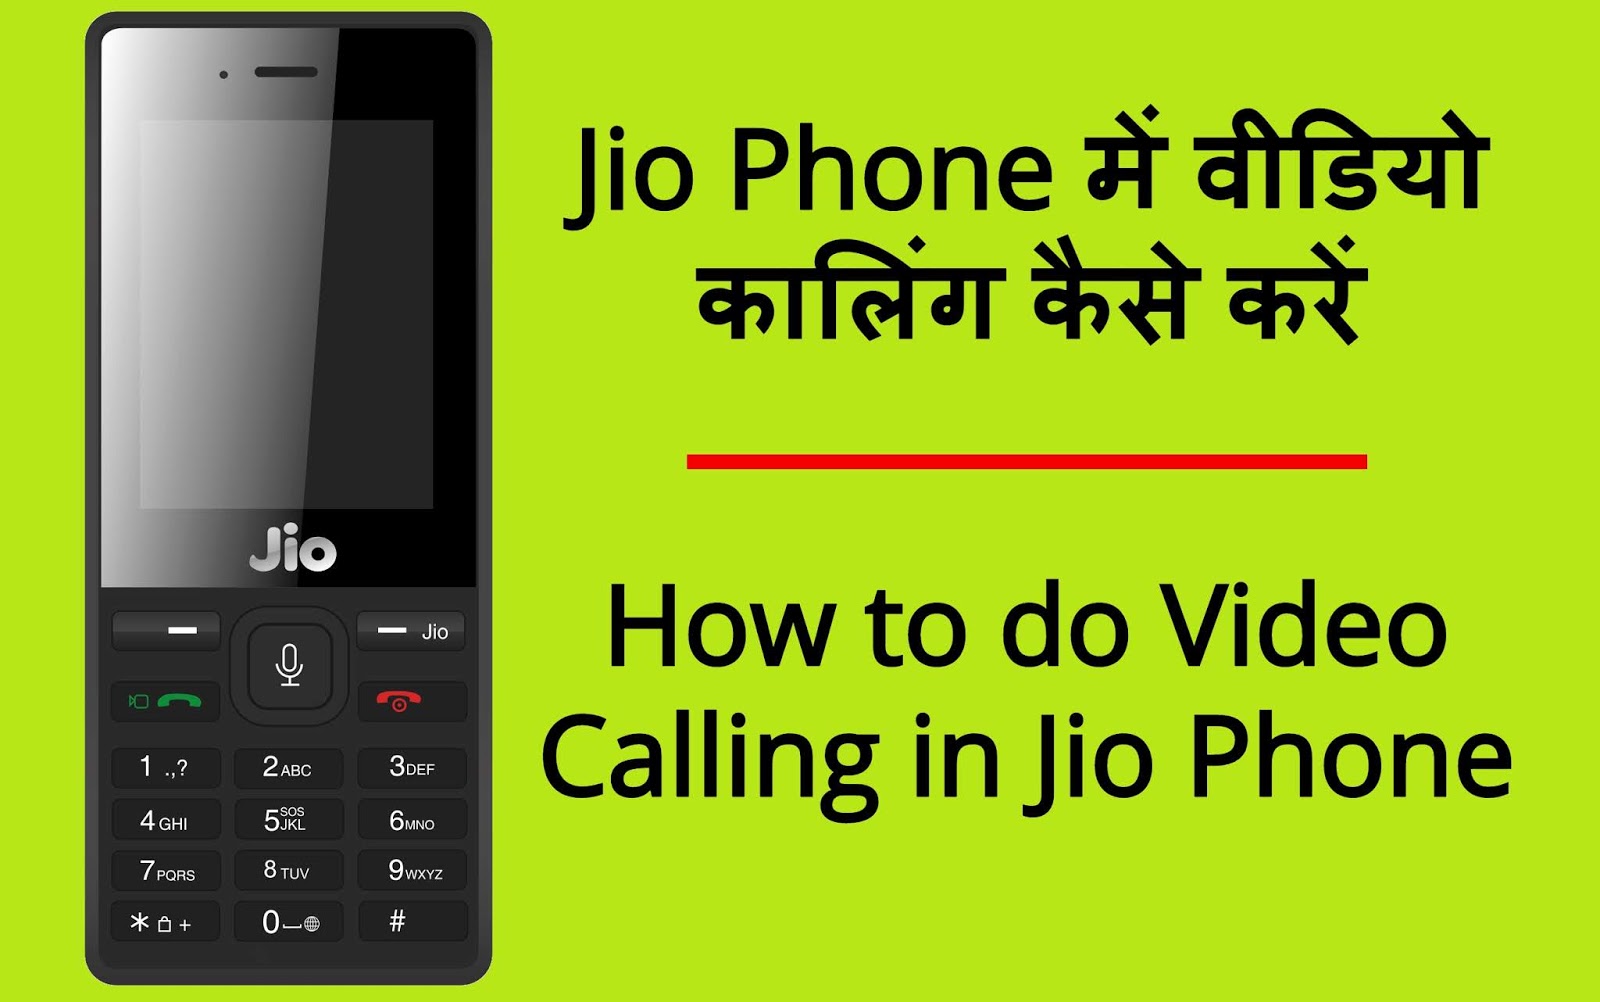 Jio Phone mein Video Calling kaise kare